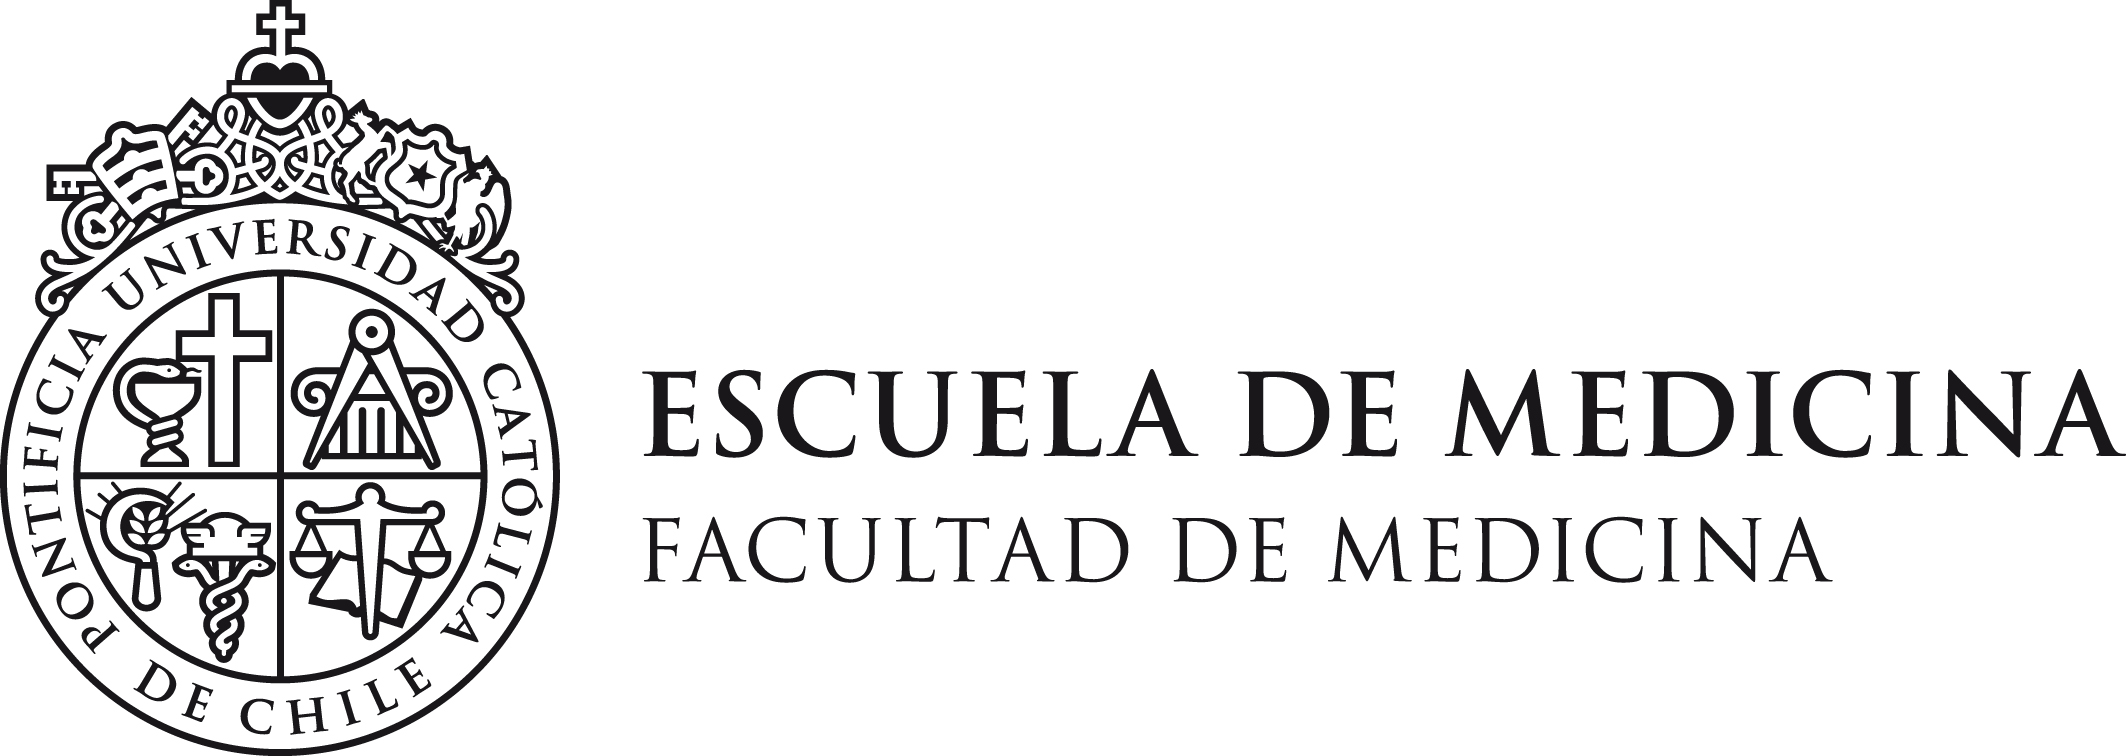 School of Medicine, Pontificia Universidad Católica de Chile Logo